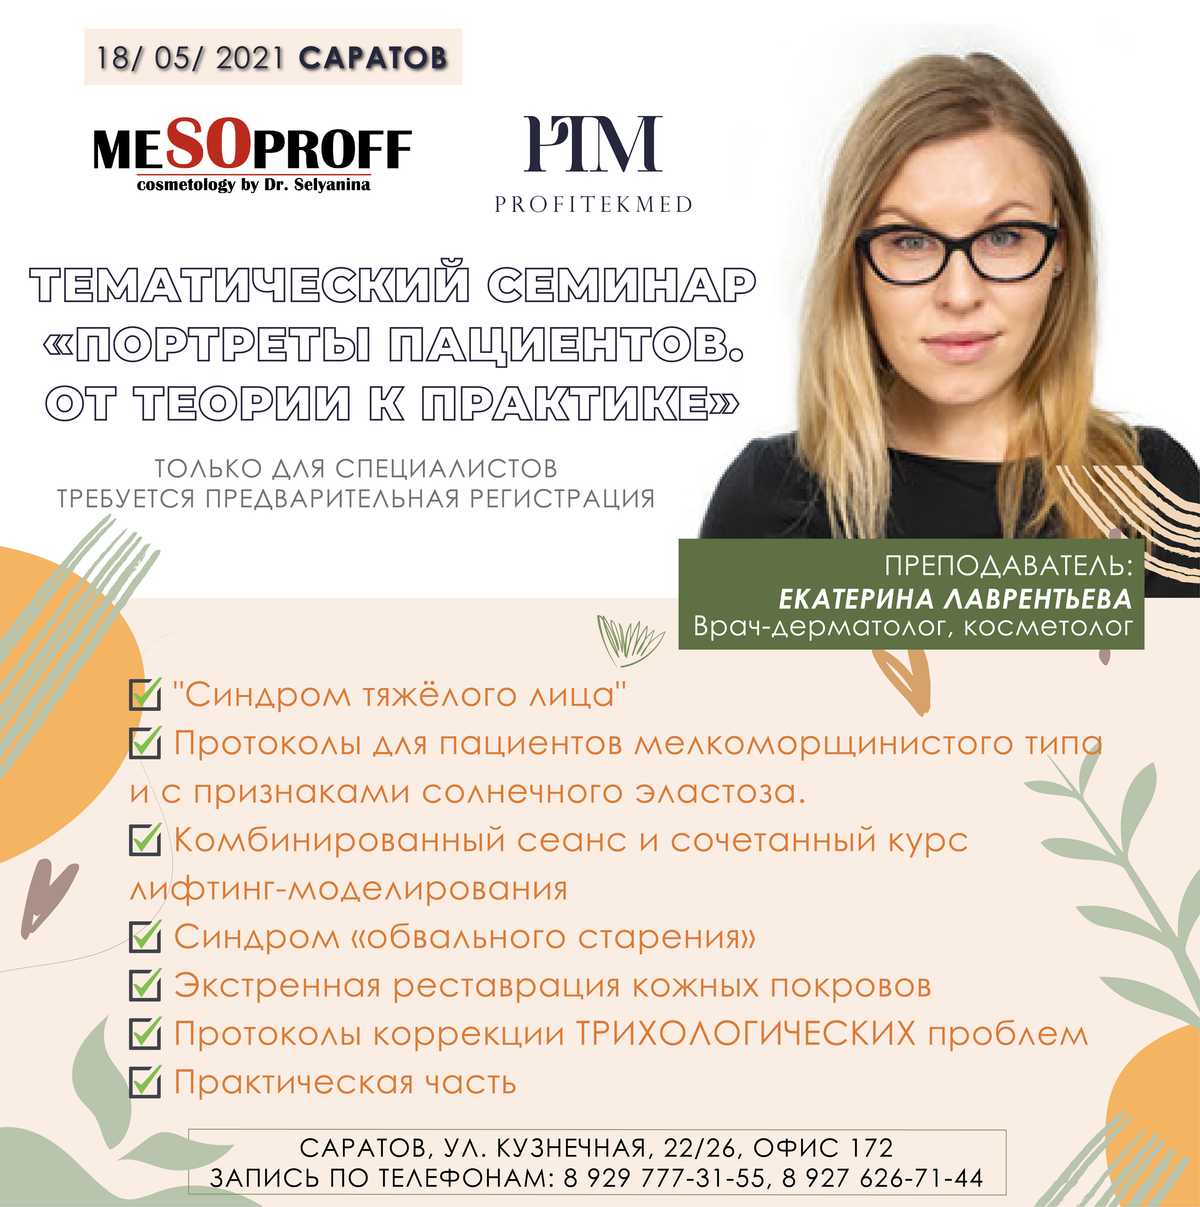 18 мая, Саратов, Тематический семинар по препаратам Мезопрофф